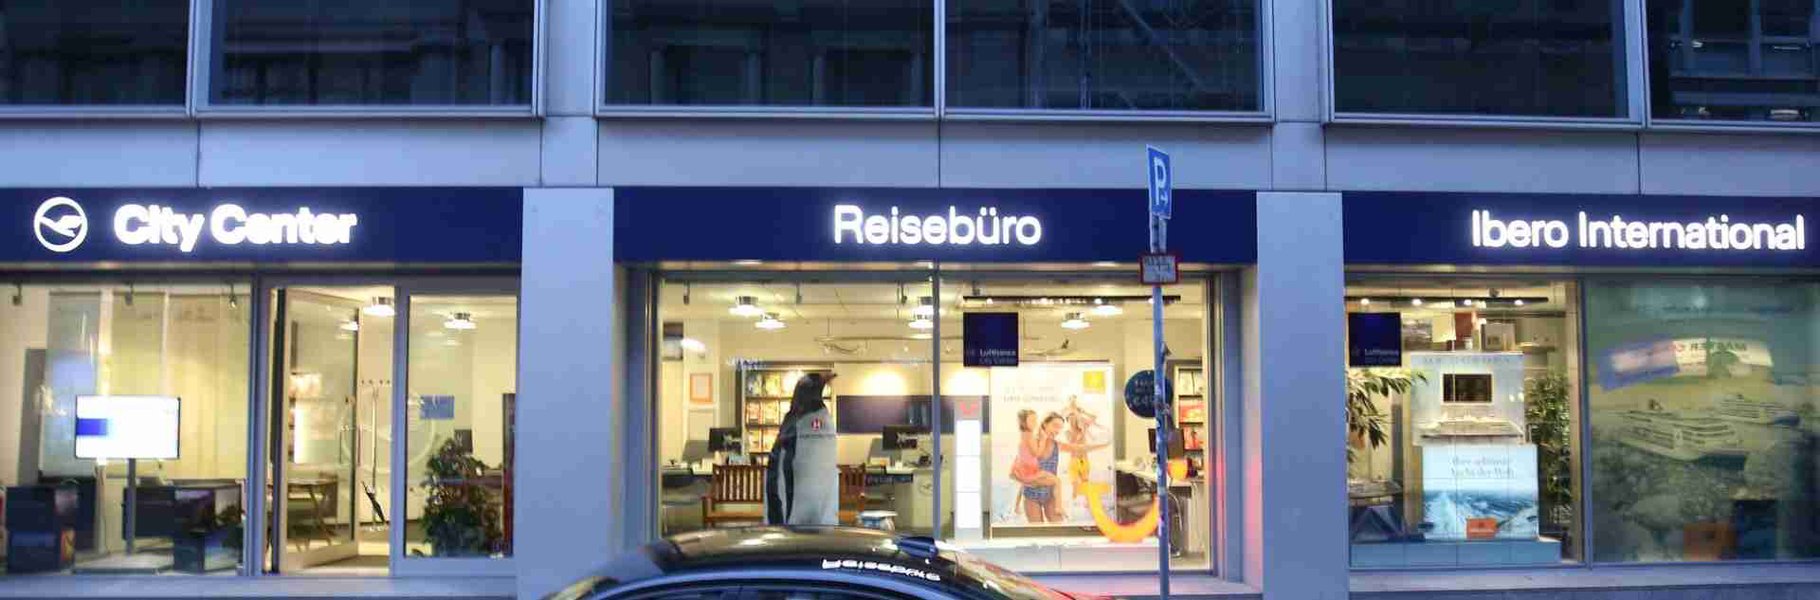 Reisebüro Ibero International